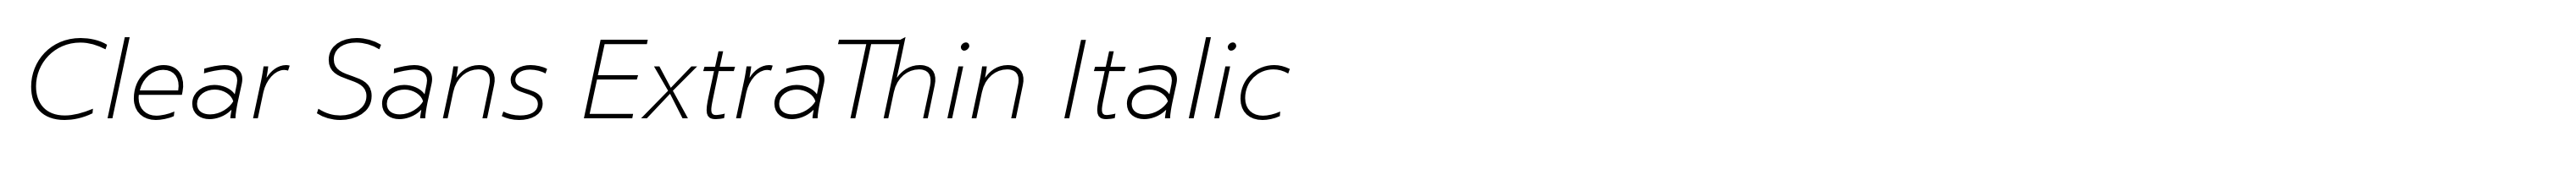 Clear Sans ExtraThin Italic